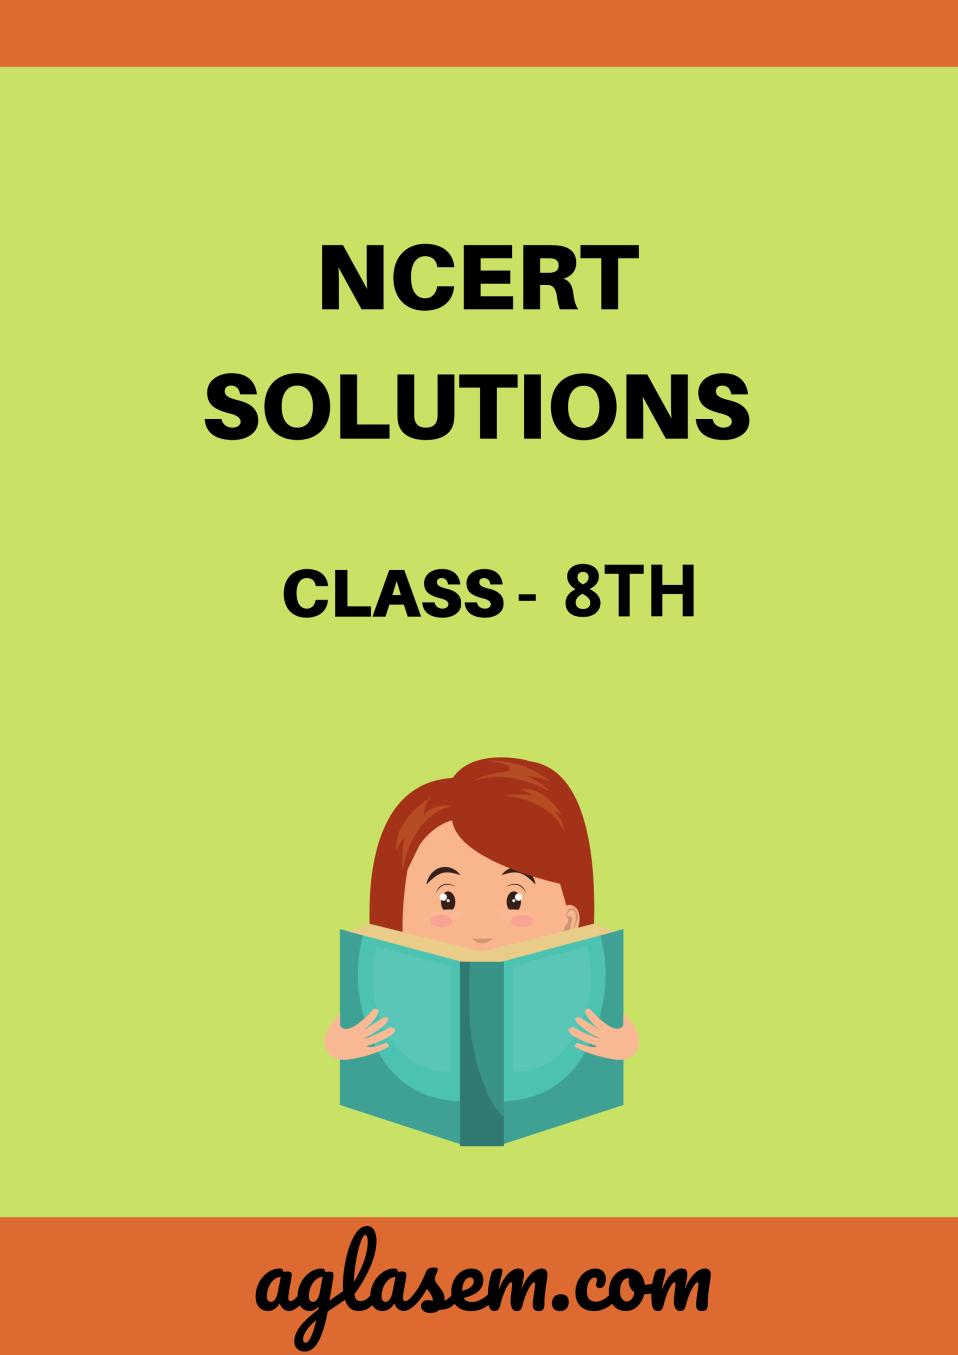 NCERT Solutions for Class 8 इतिहास (हमारे अतीत - III) Chapter 4 आदिवासी, दिकु और एक स्वर्ण युग की कल्पना (Hindi Medium) - Page 1